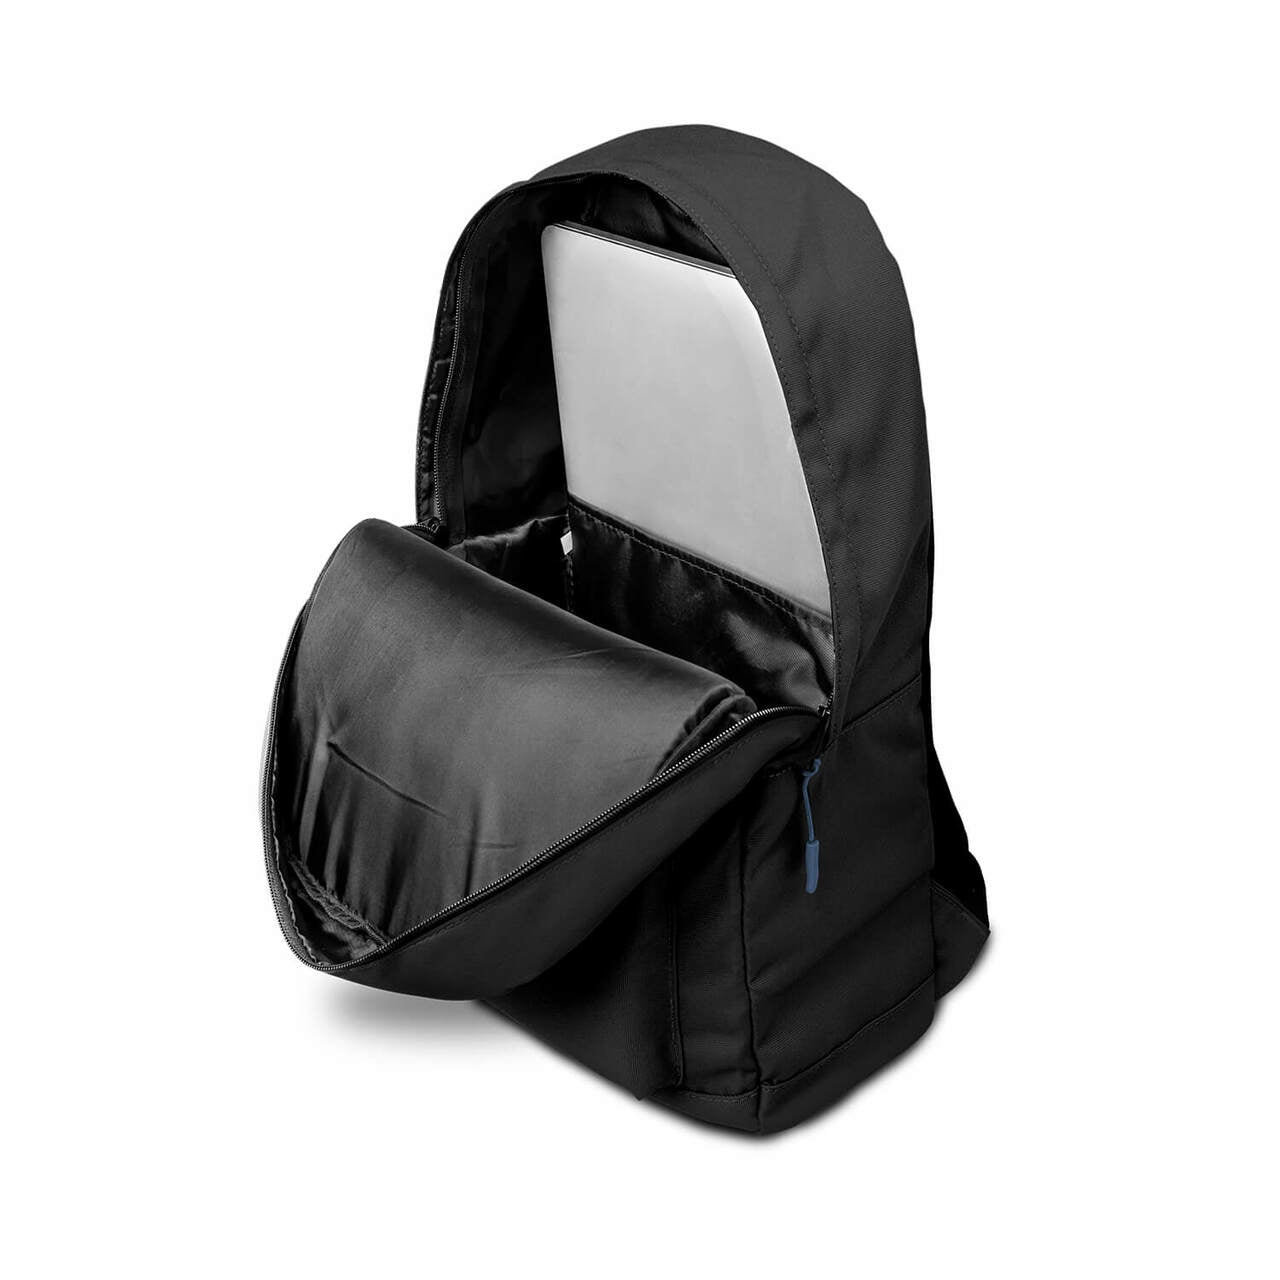 New York Islanders Campus Laptop Backpack- Black